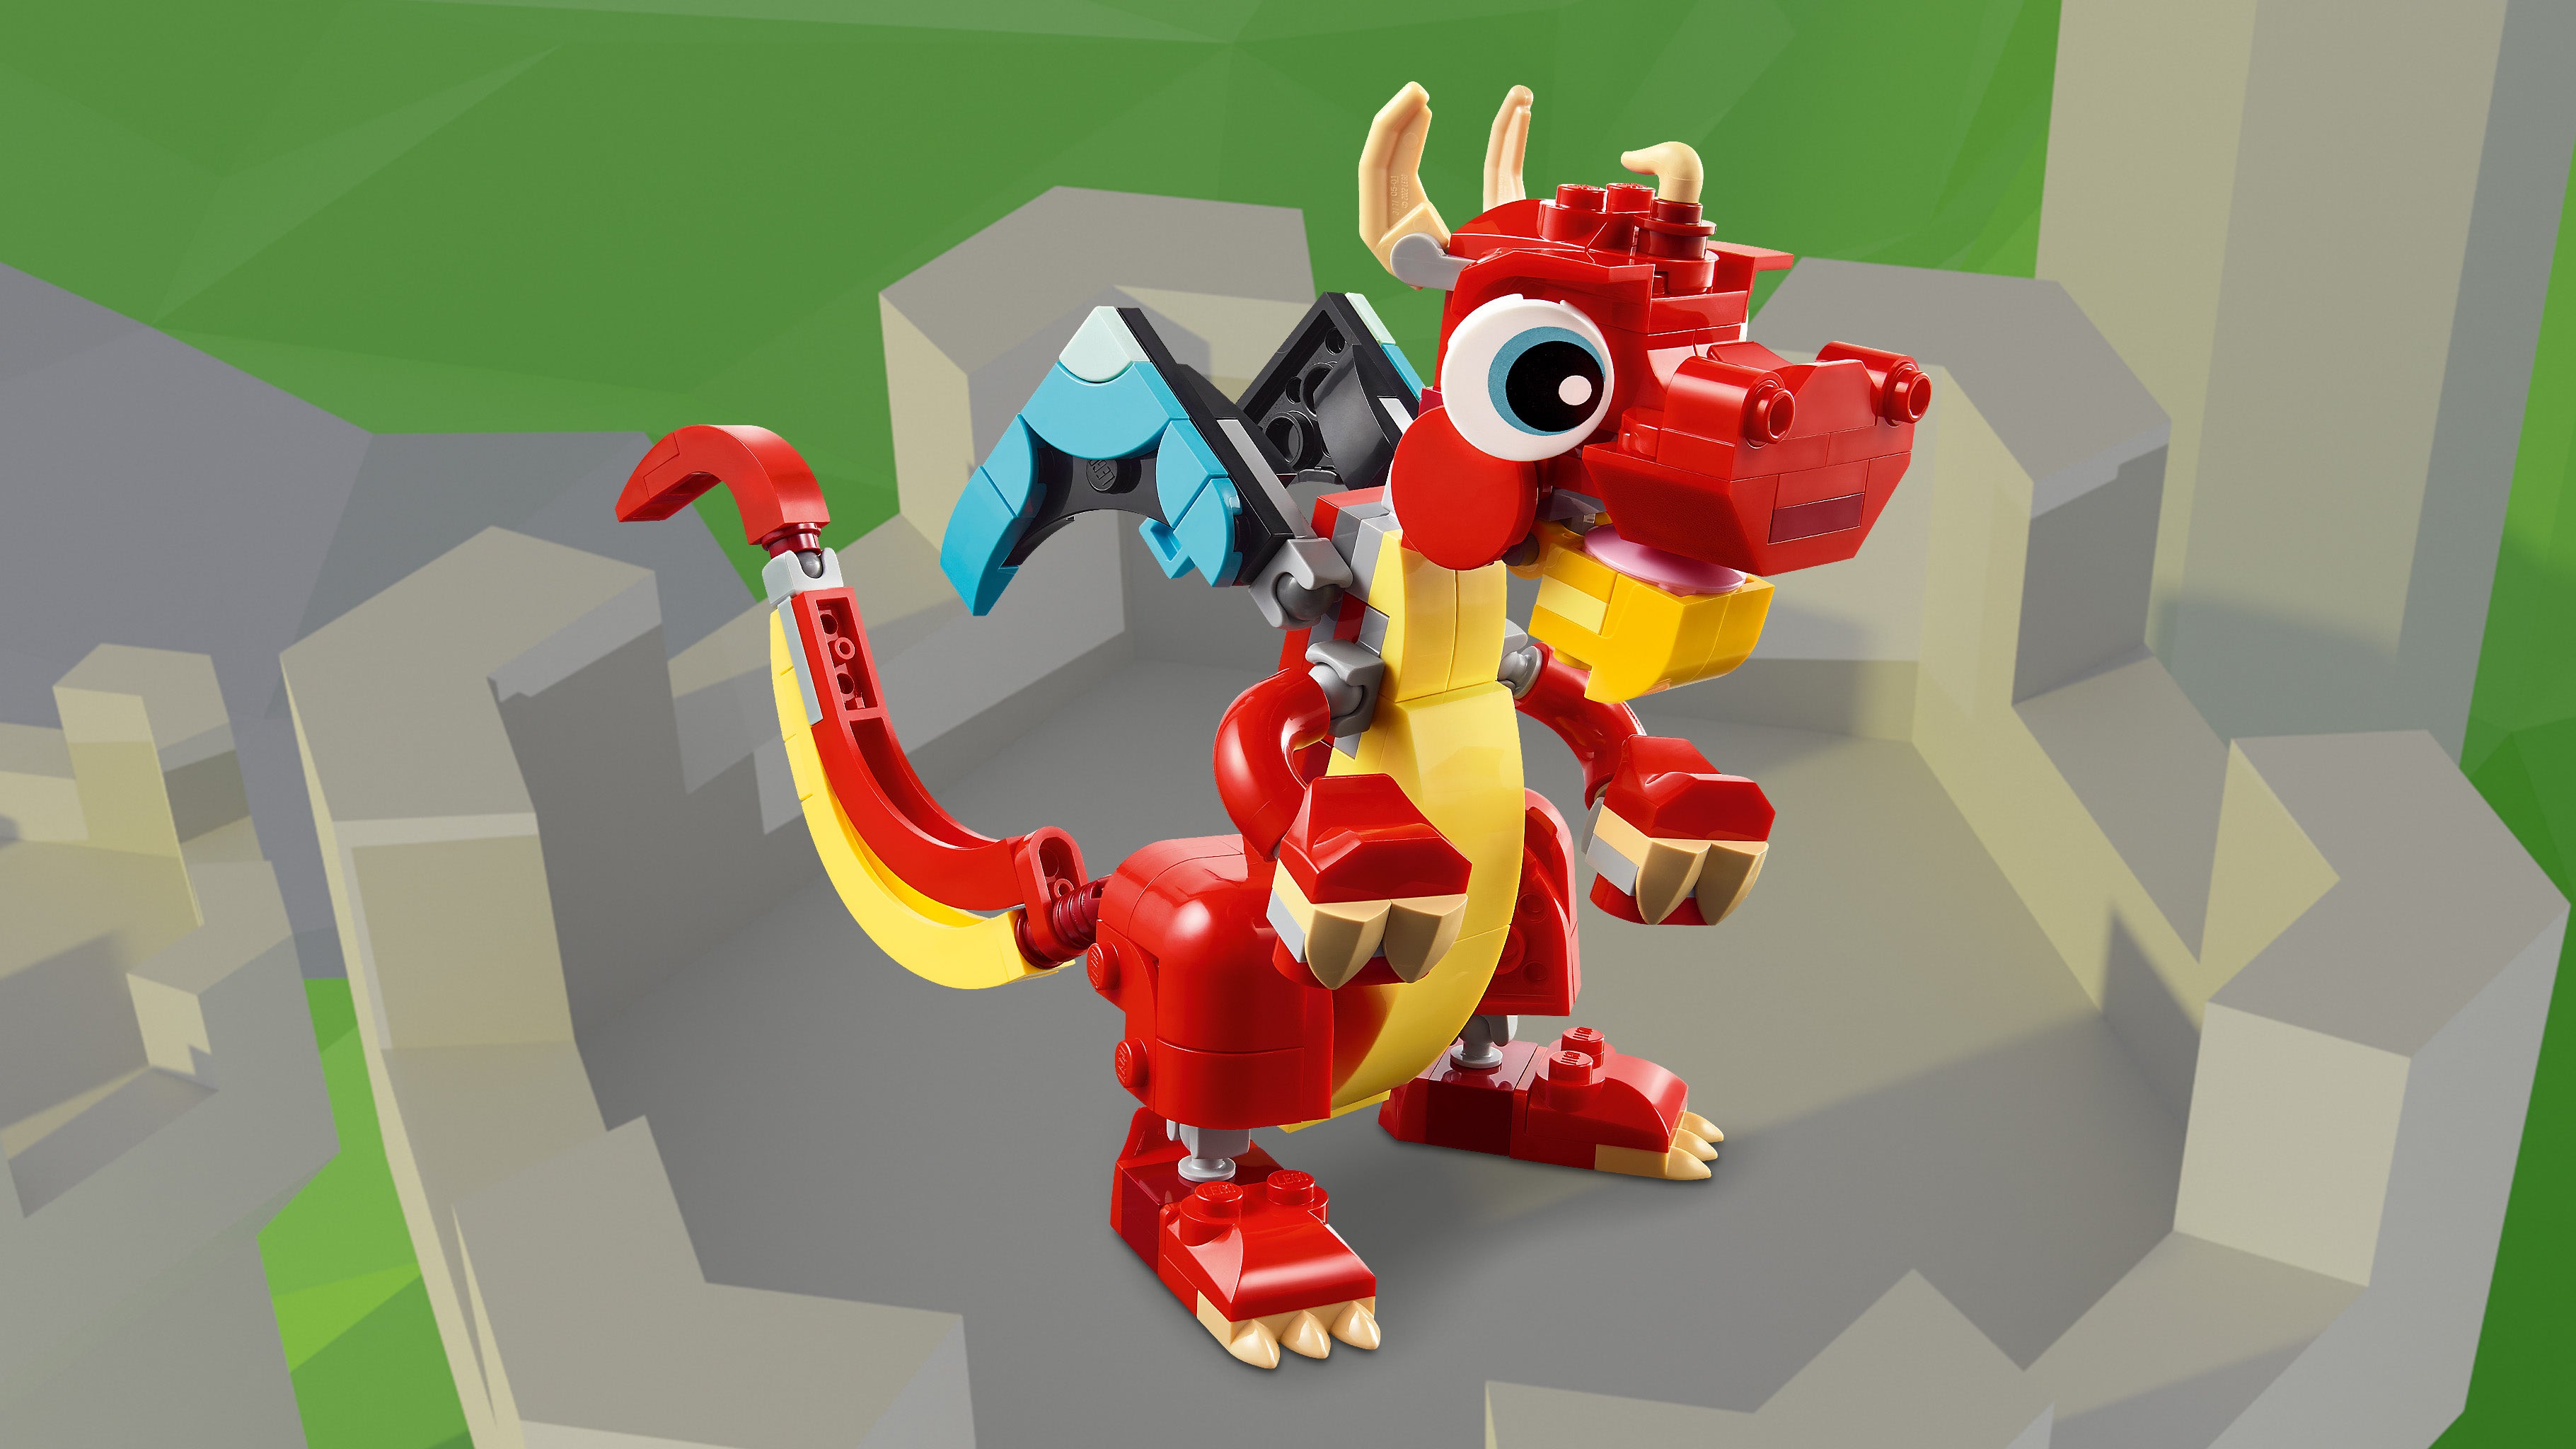 Lego 31145 Red Dragon